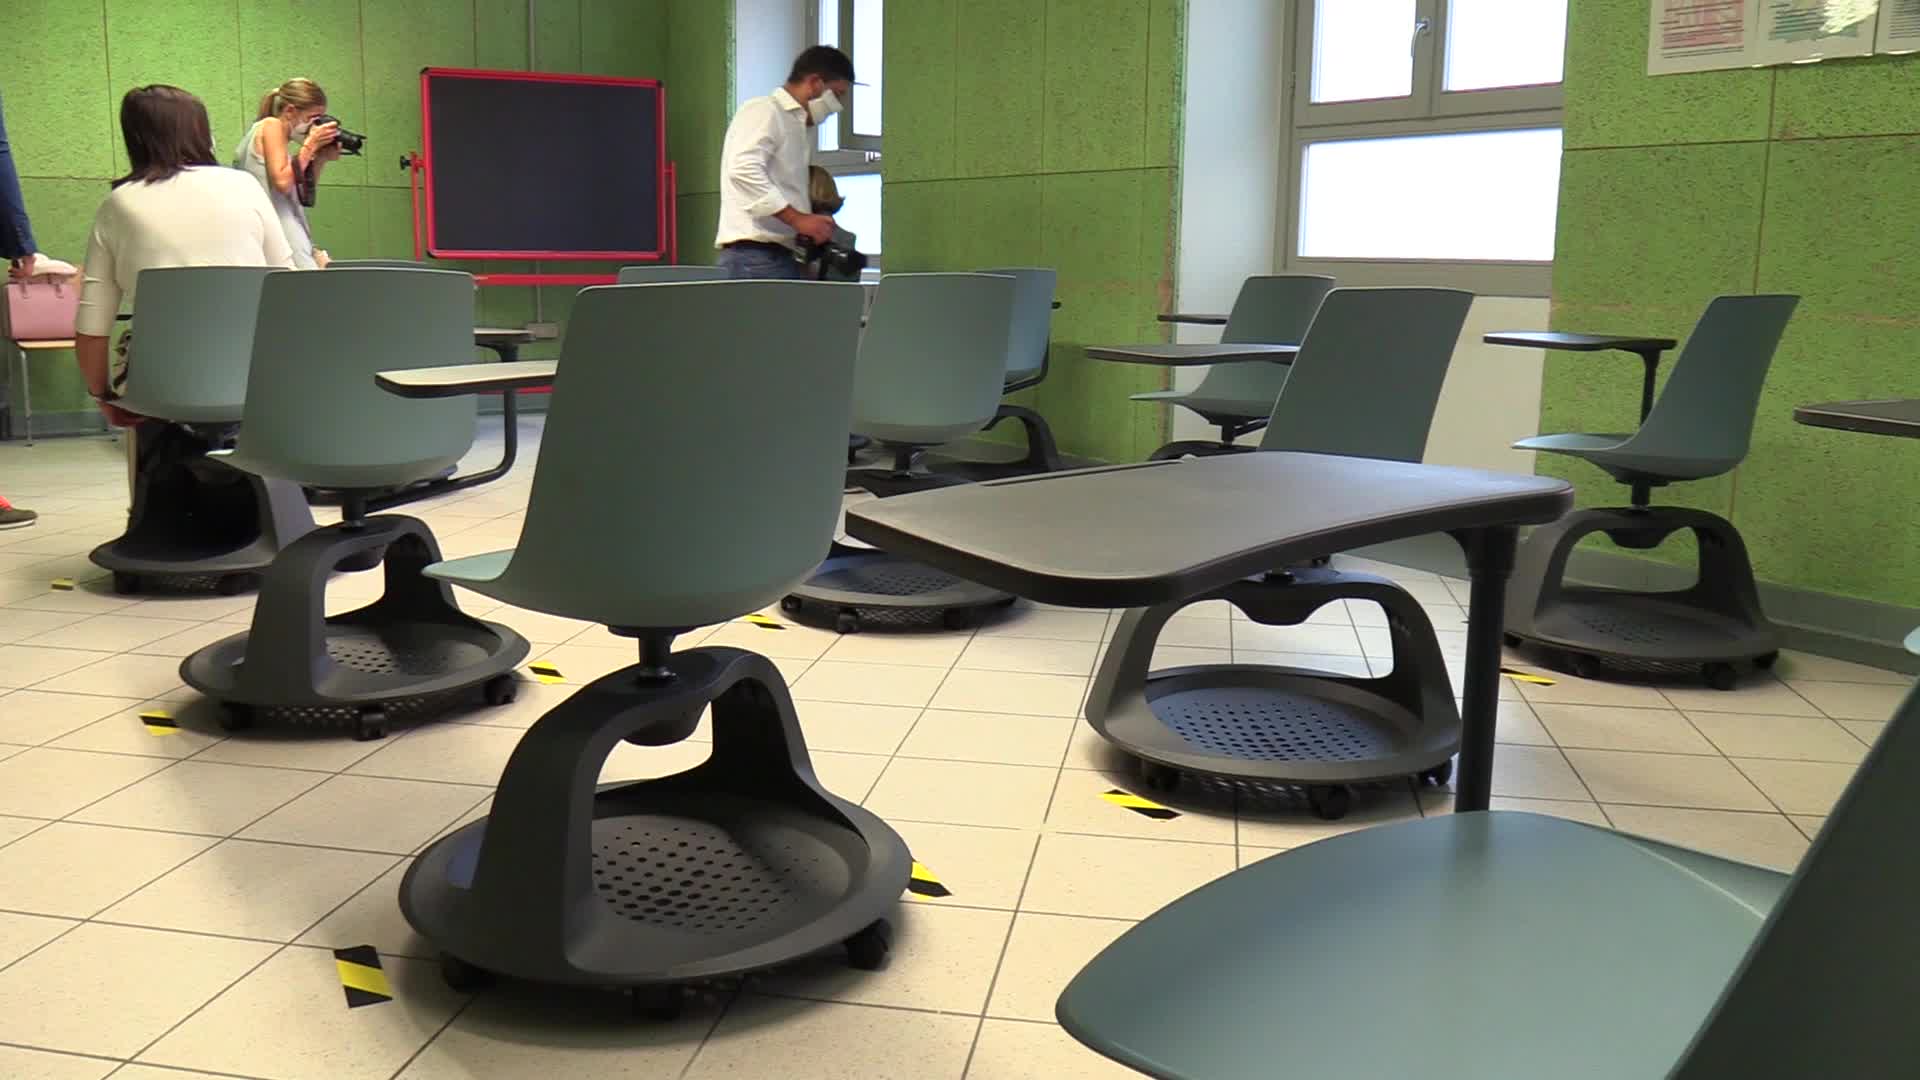 Scuola, banchi a rotelle bocciati a Codogno: "Non sono funzionali"